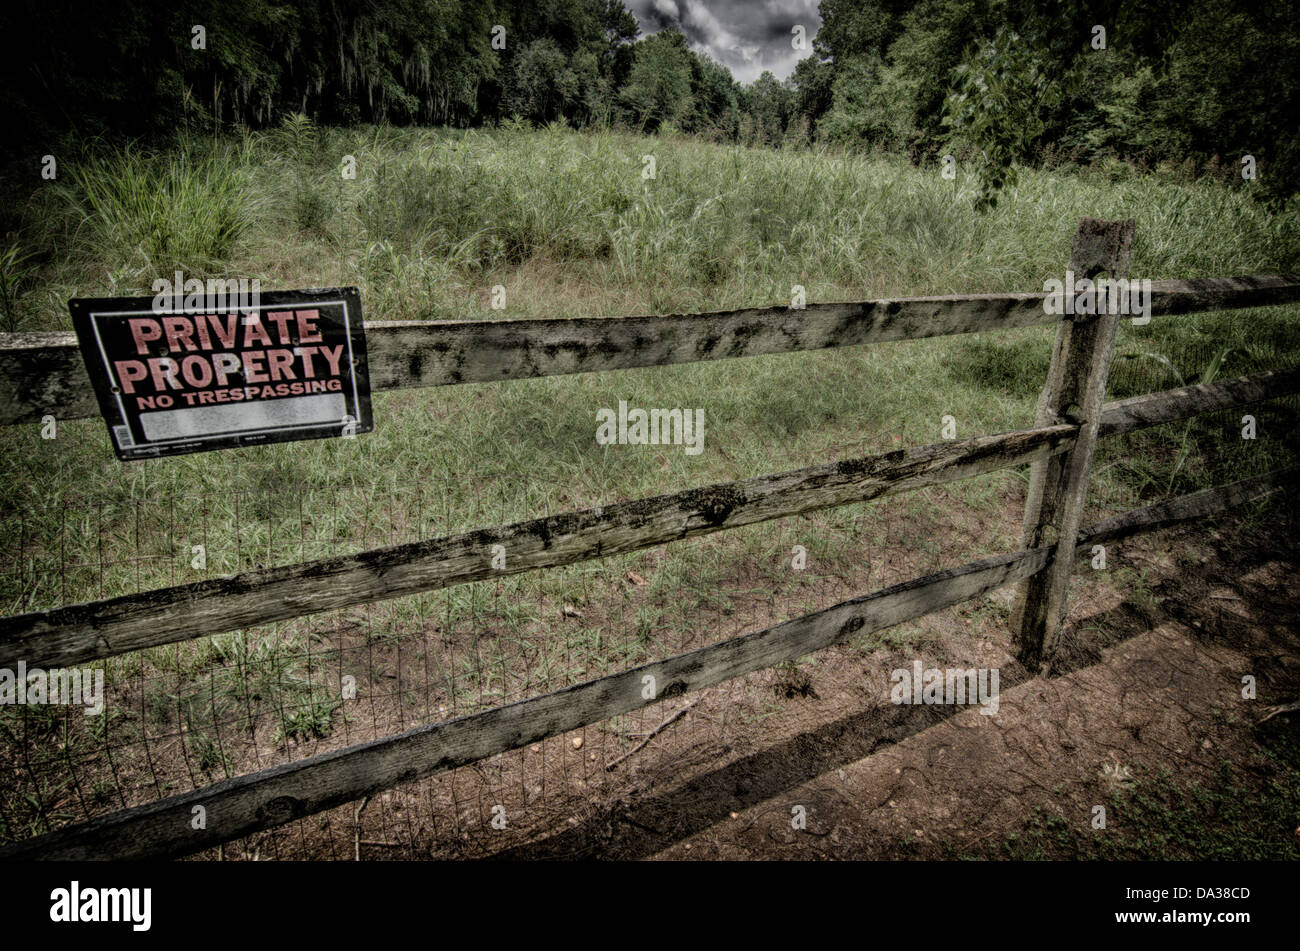 Si tratta di una immagine di una schifezza di una proprietà privata segno su una staccionata di legno in una zona rurale. Foto Stock